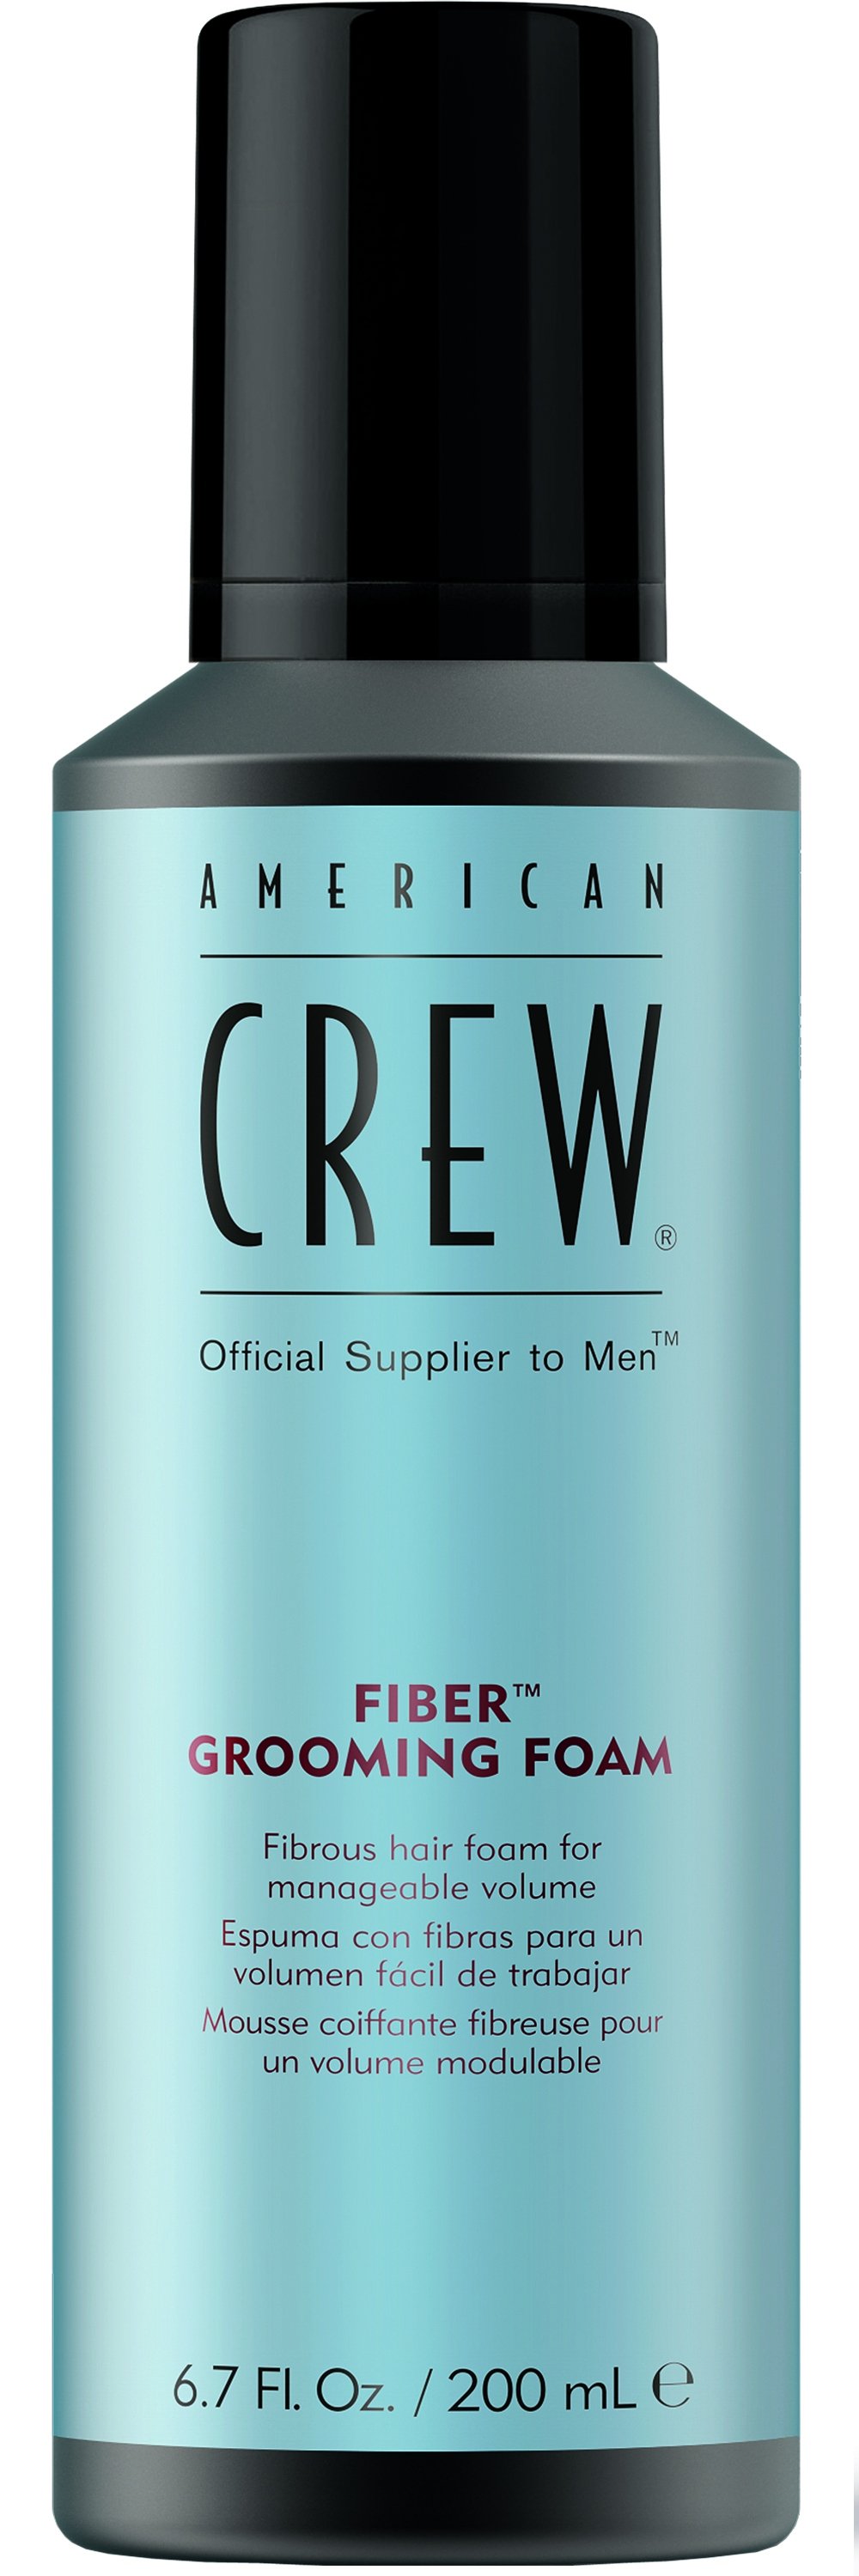 Мужские средства для укладки волос:  AMERICAN CREW -  Пена для укладки волос FIBER GROOMING FOAM (200 мл)